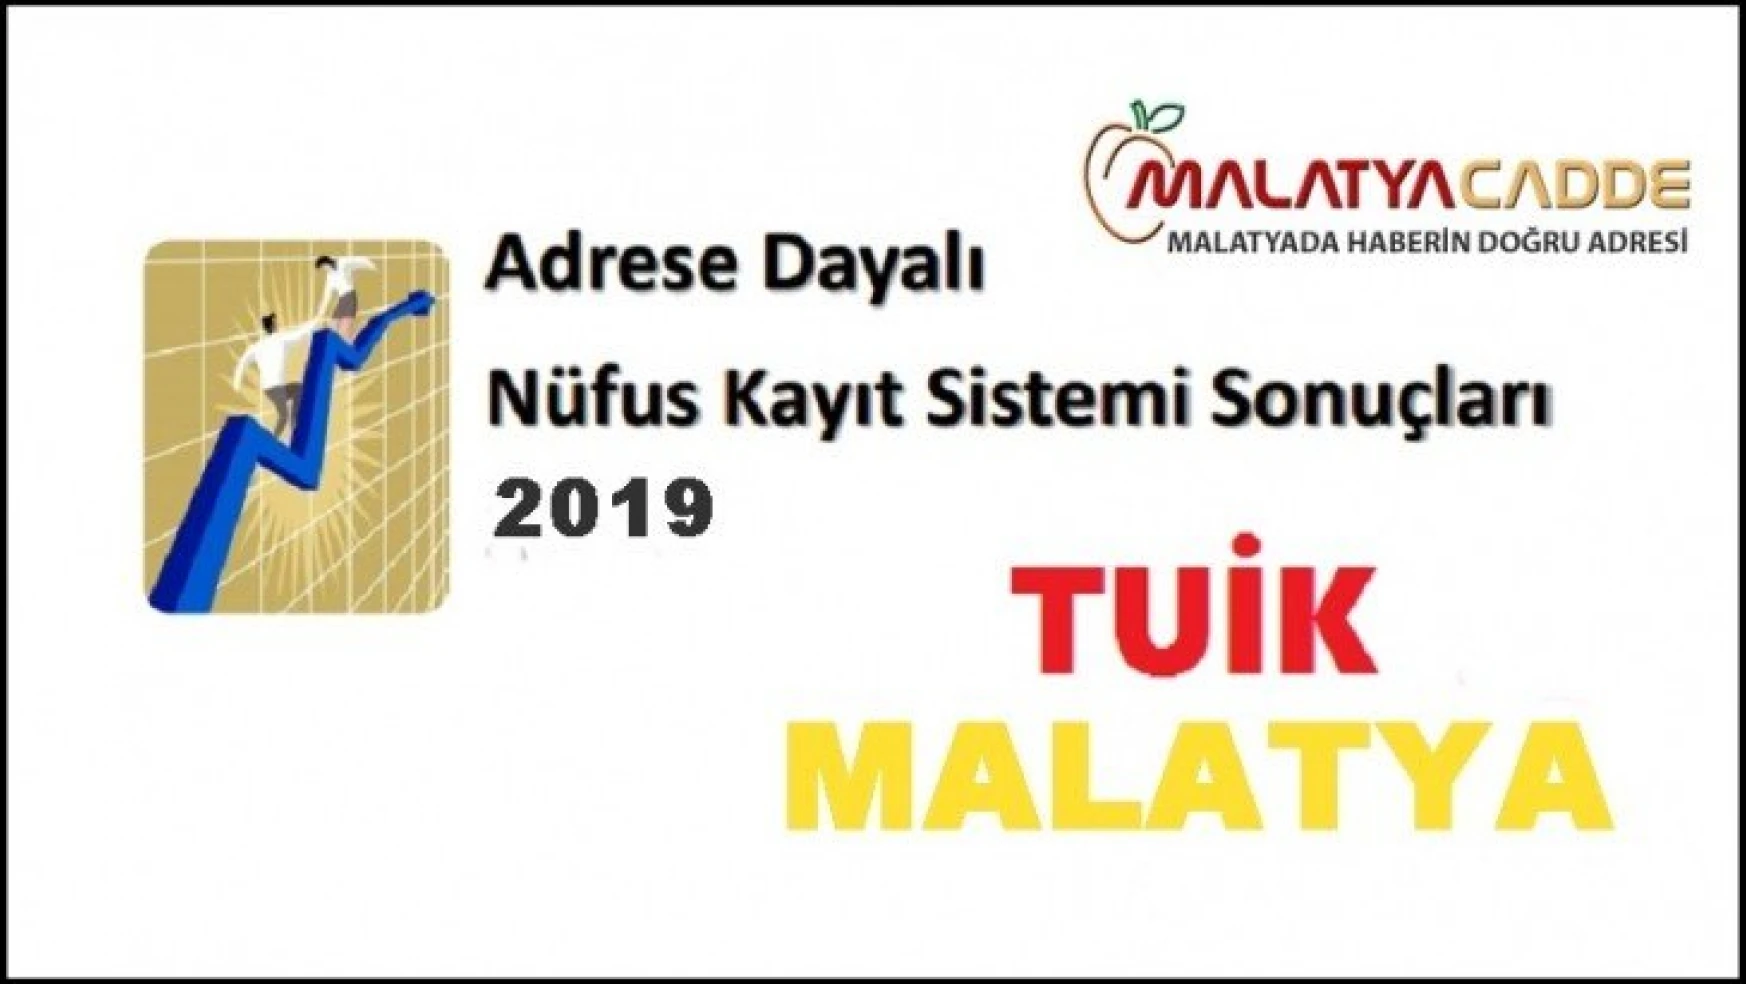 Malatya'da Adrese Dayalı Nüfus Kayıt Sistemi Sonuçları